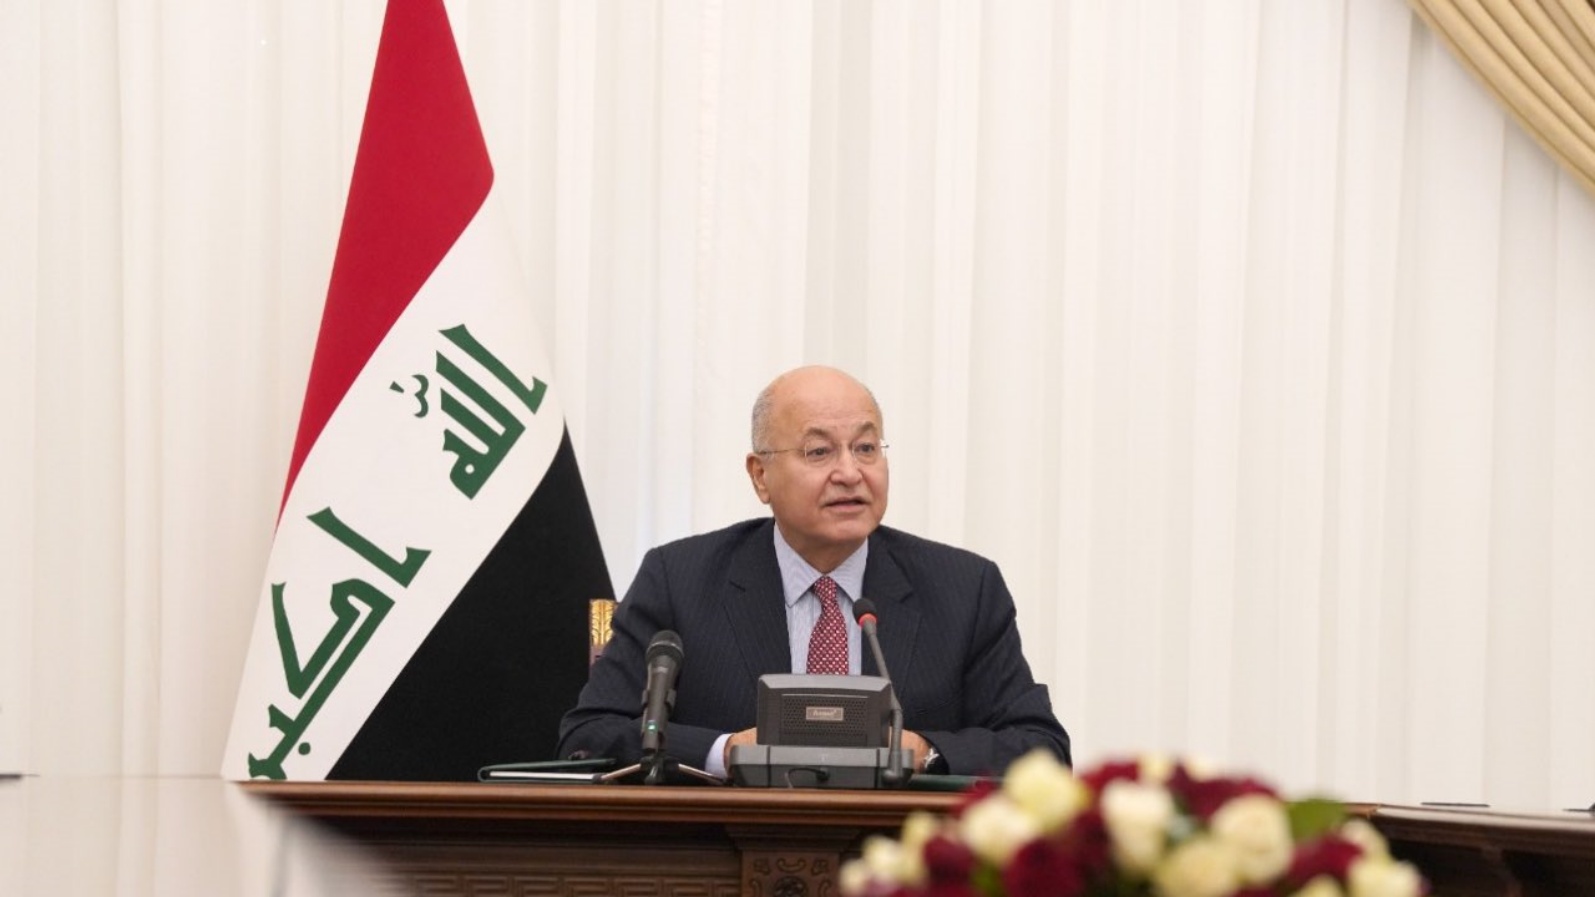 الرئيس العراقي برهم صالح حذّر من كارثة مناخية عابرة للحدود (الرئاسة العراقية). الأربعاء 6 تشرين الأول/ أكتوبر 2021.